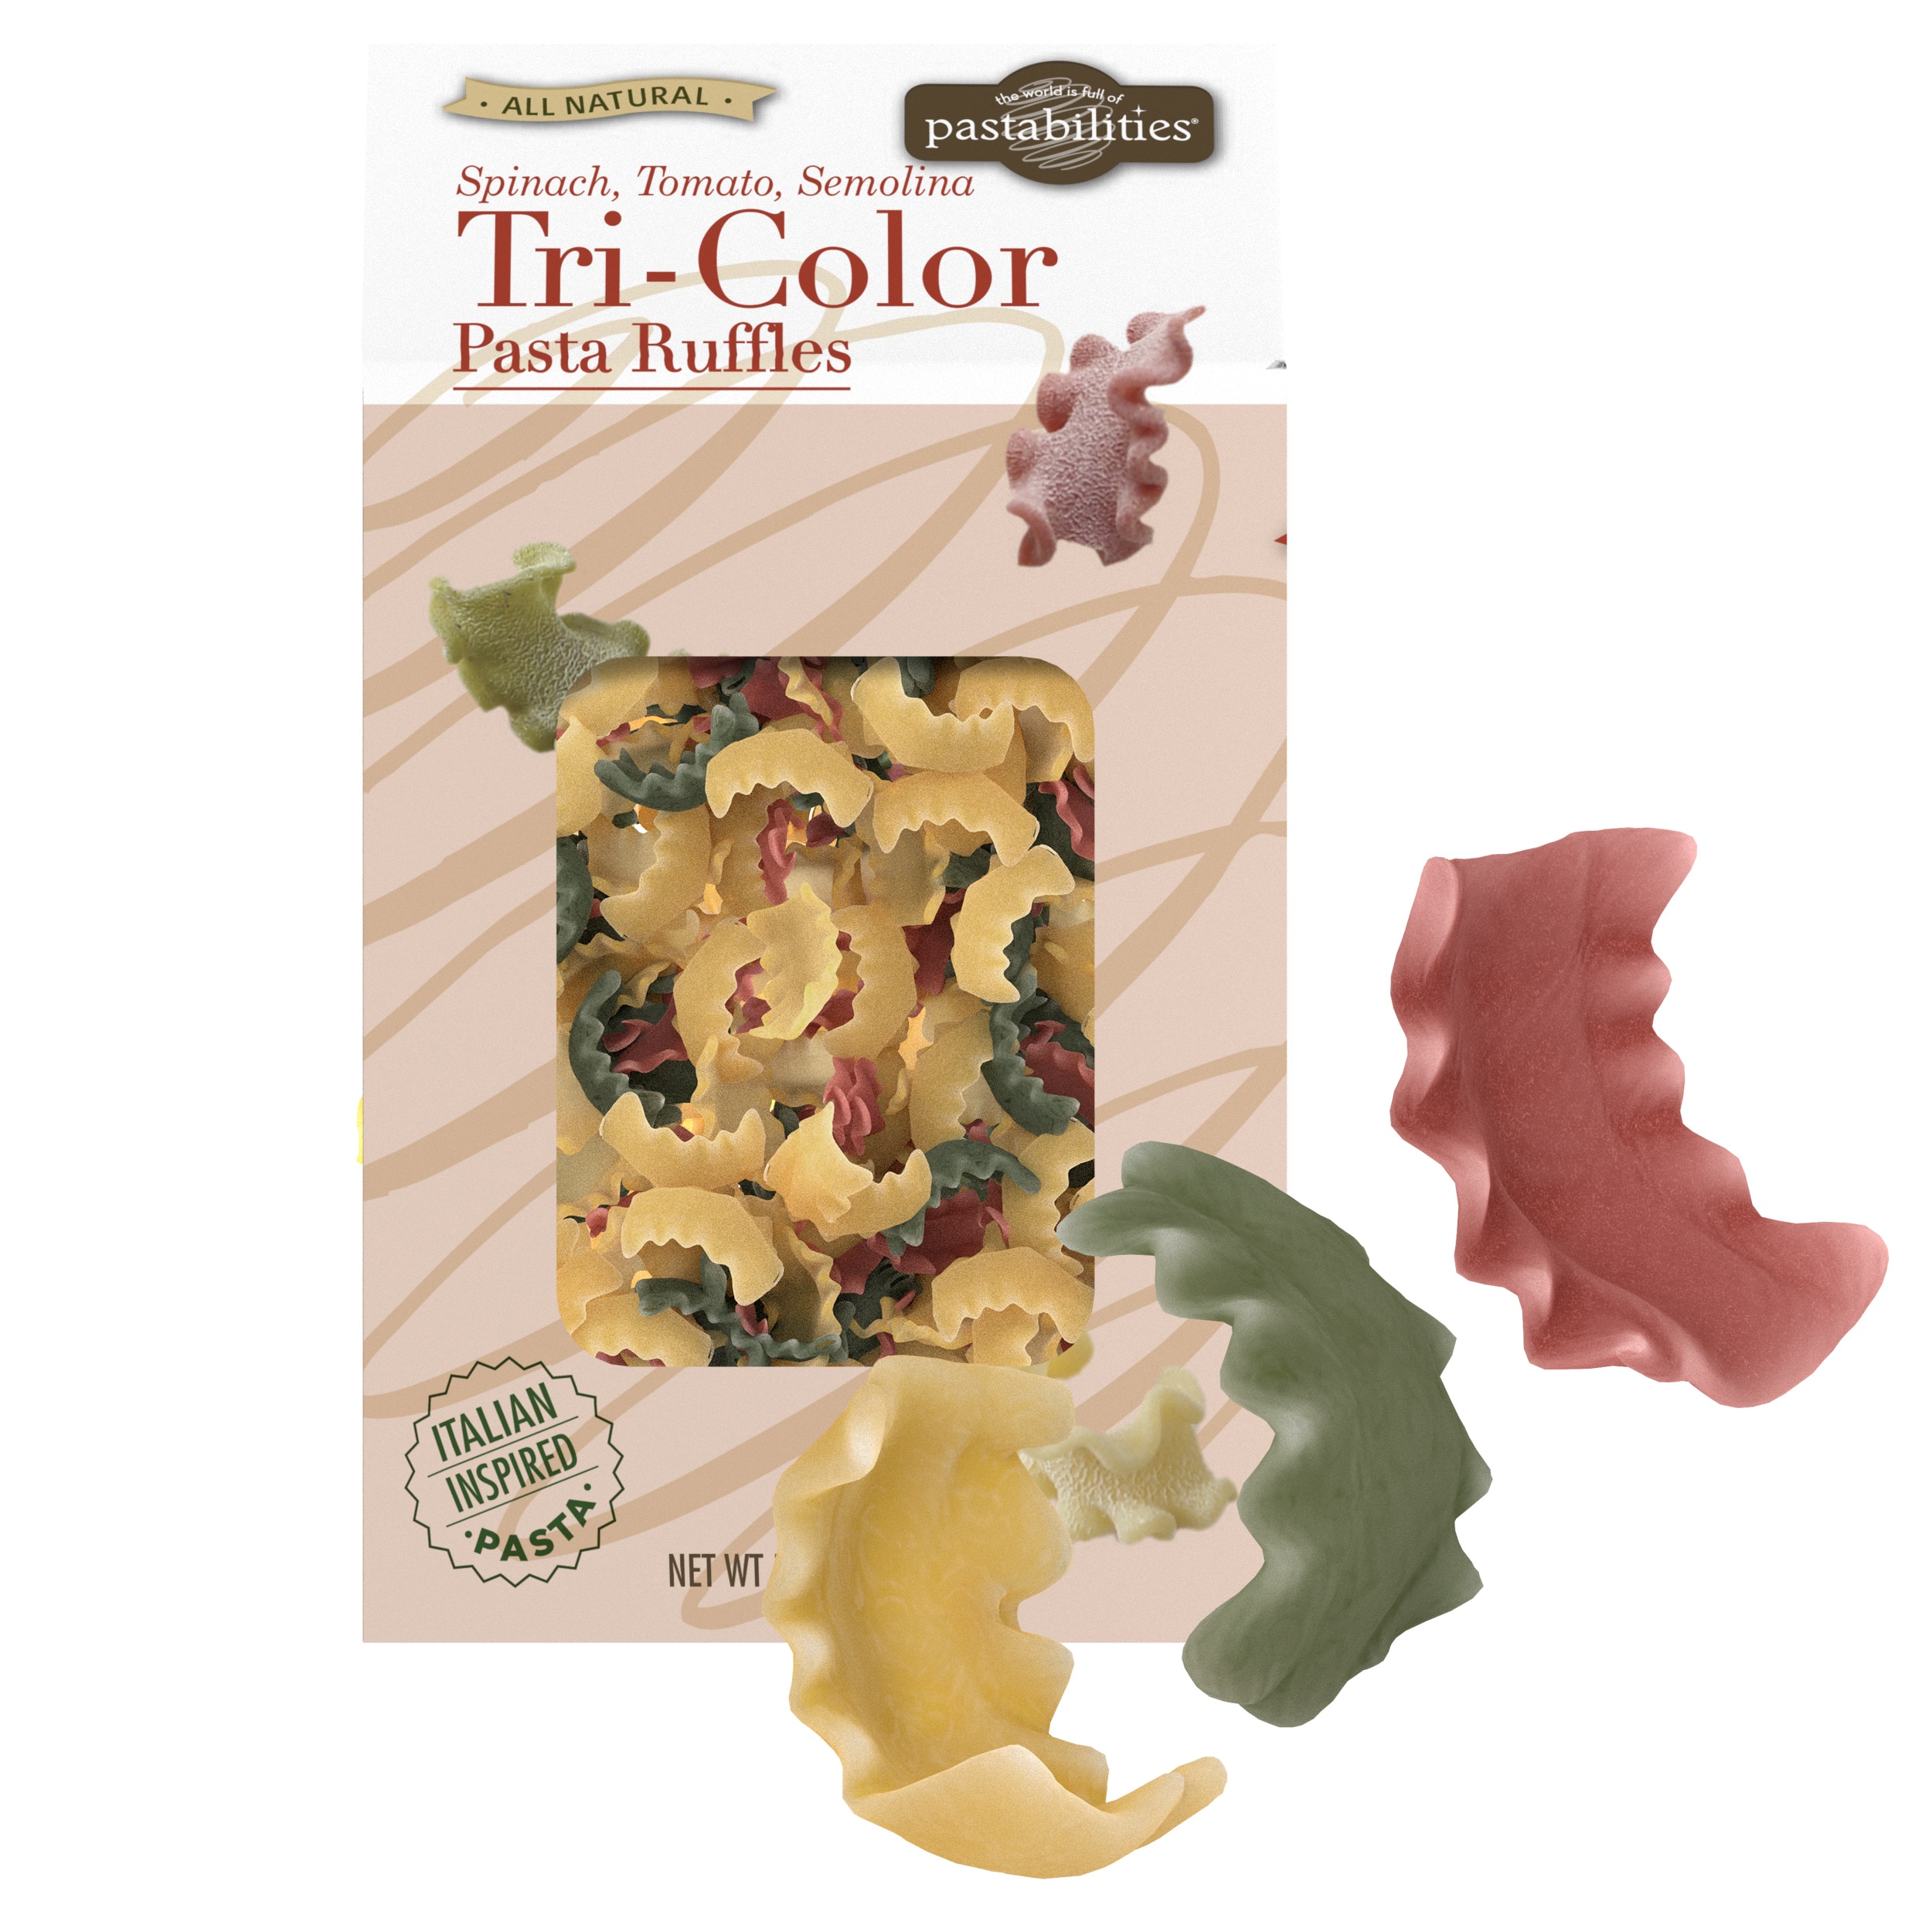 Tri-Color Pasta Ruffles, Mafaldine Pasta